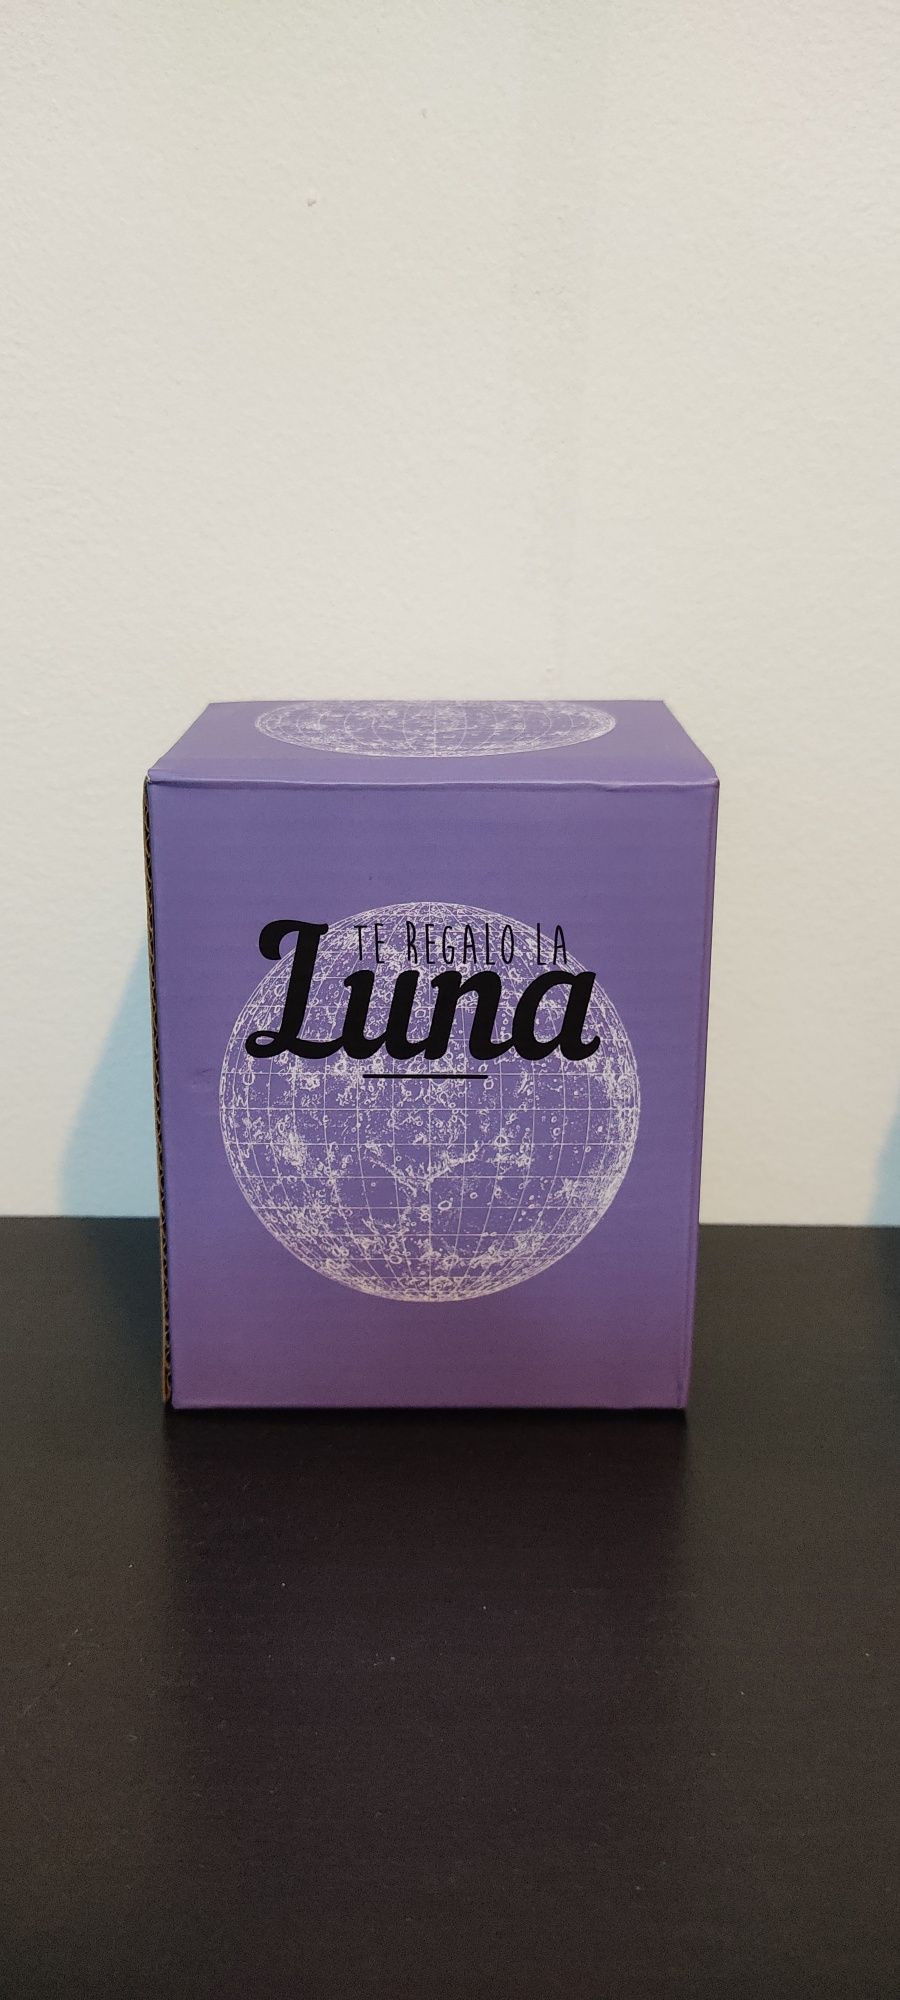 Lâmpada Lua "Luna" - Portes grátis.